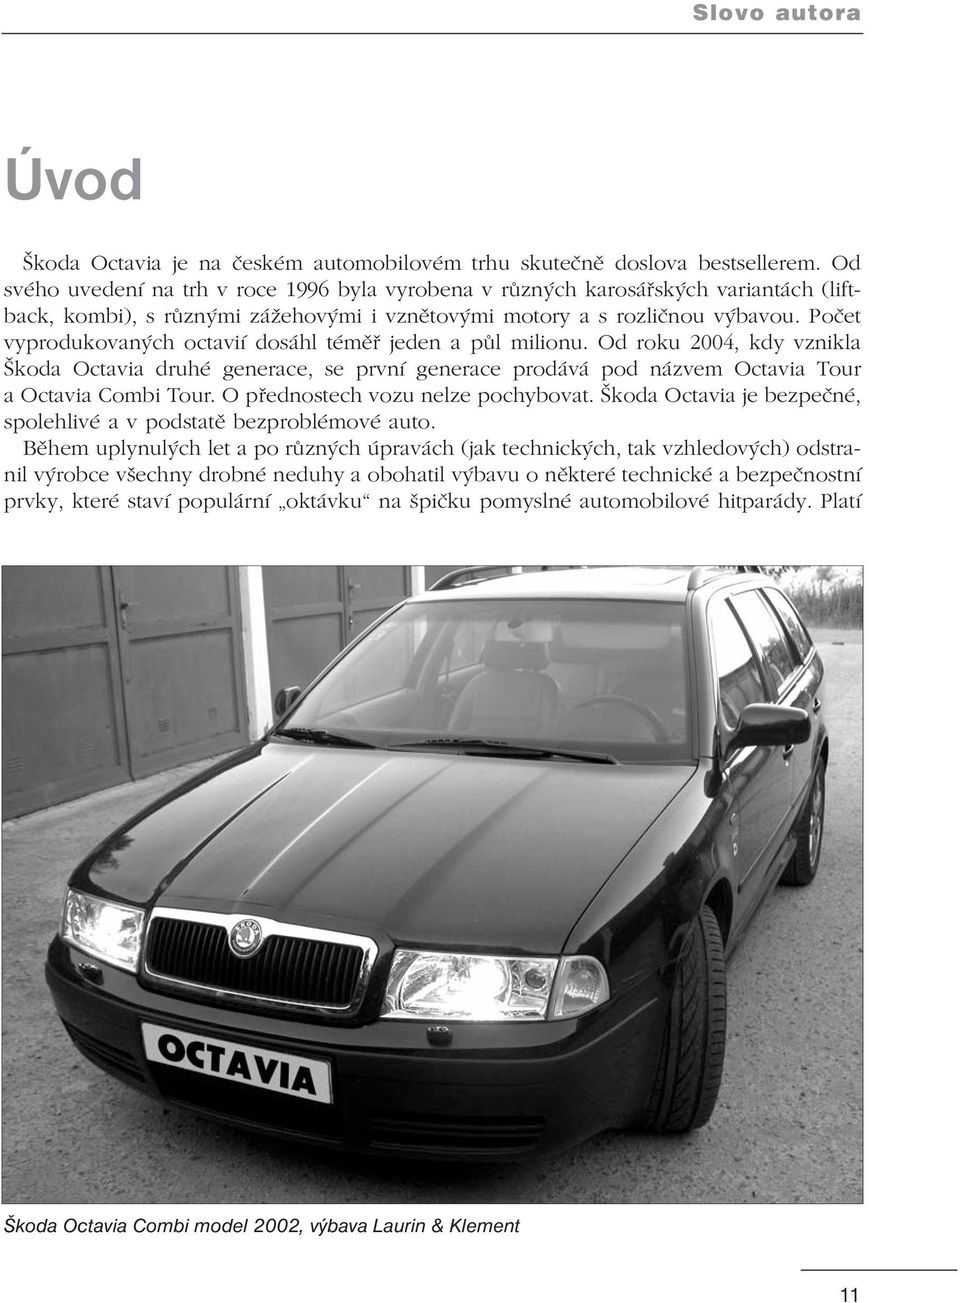 Počet vyprodukovaných octavií dosáhl téměř jeden a půl milionu. Od roku 2004, kdy vznikla Škoda Octavia druhé generace, se první generace prodává pod názvem Octavia Tour a Octavia Combi Tour.